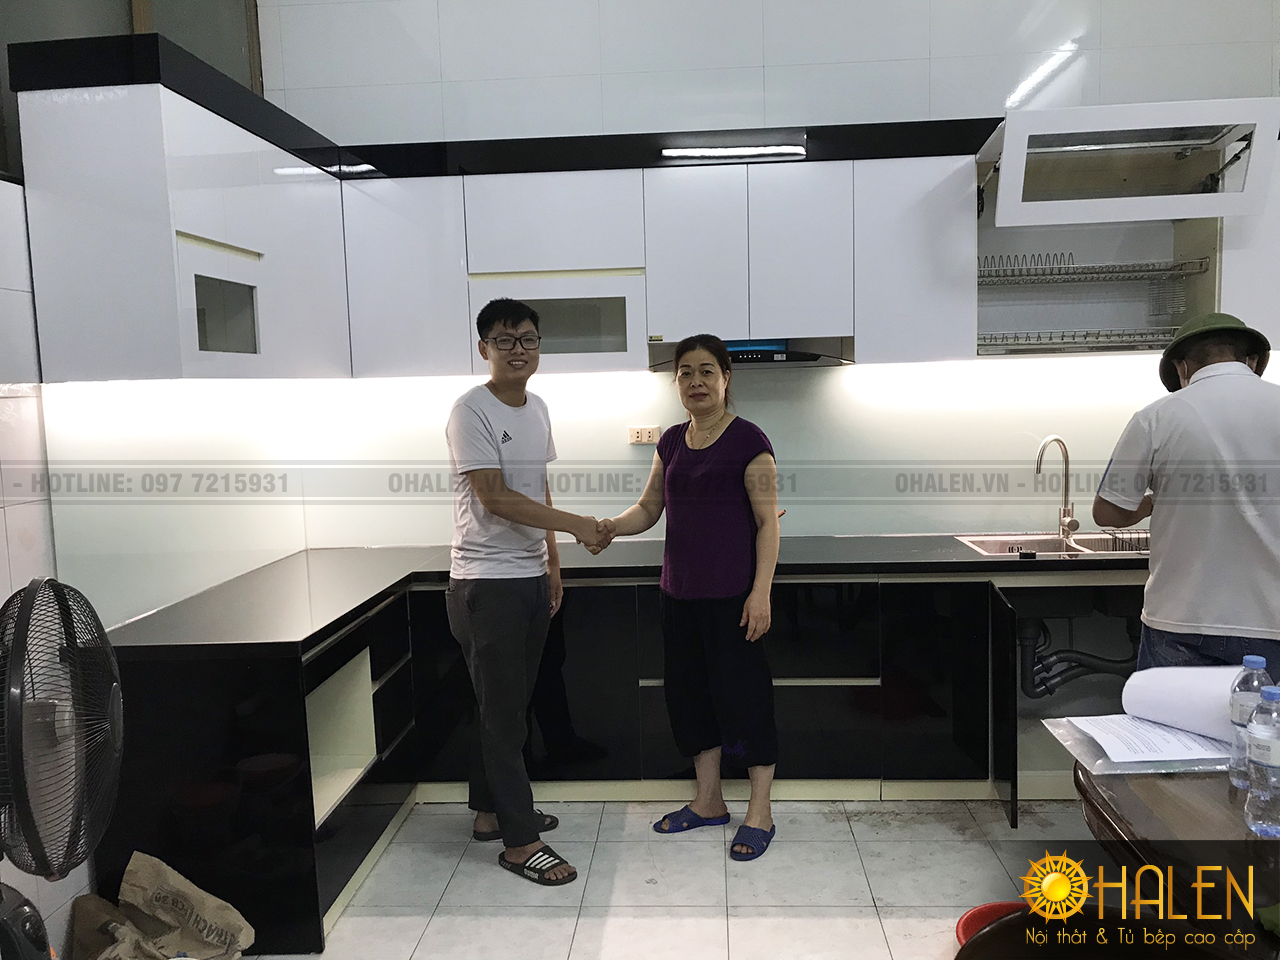 Nội thất OHALEN bàn giao cho khách hàng công trình tủ bếp tại Gia Lâm - Hà Nội